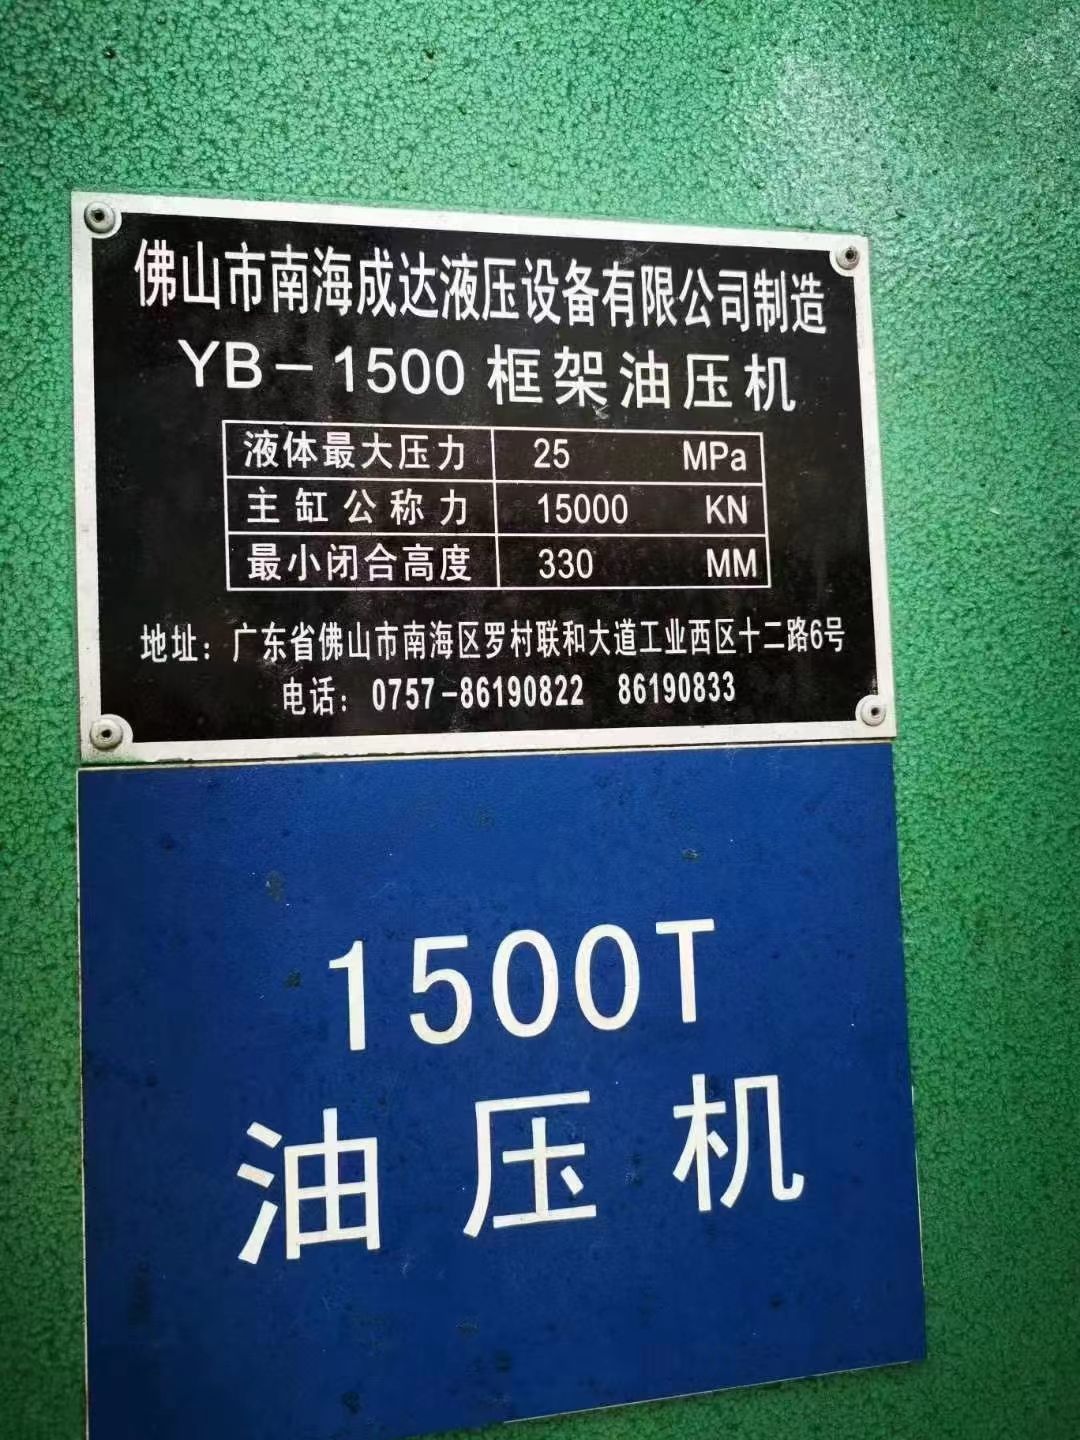 处理二手佛山YB-1500框架液压机二手1500吨液压机